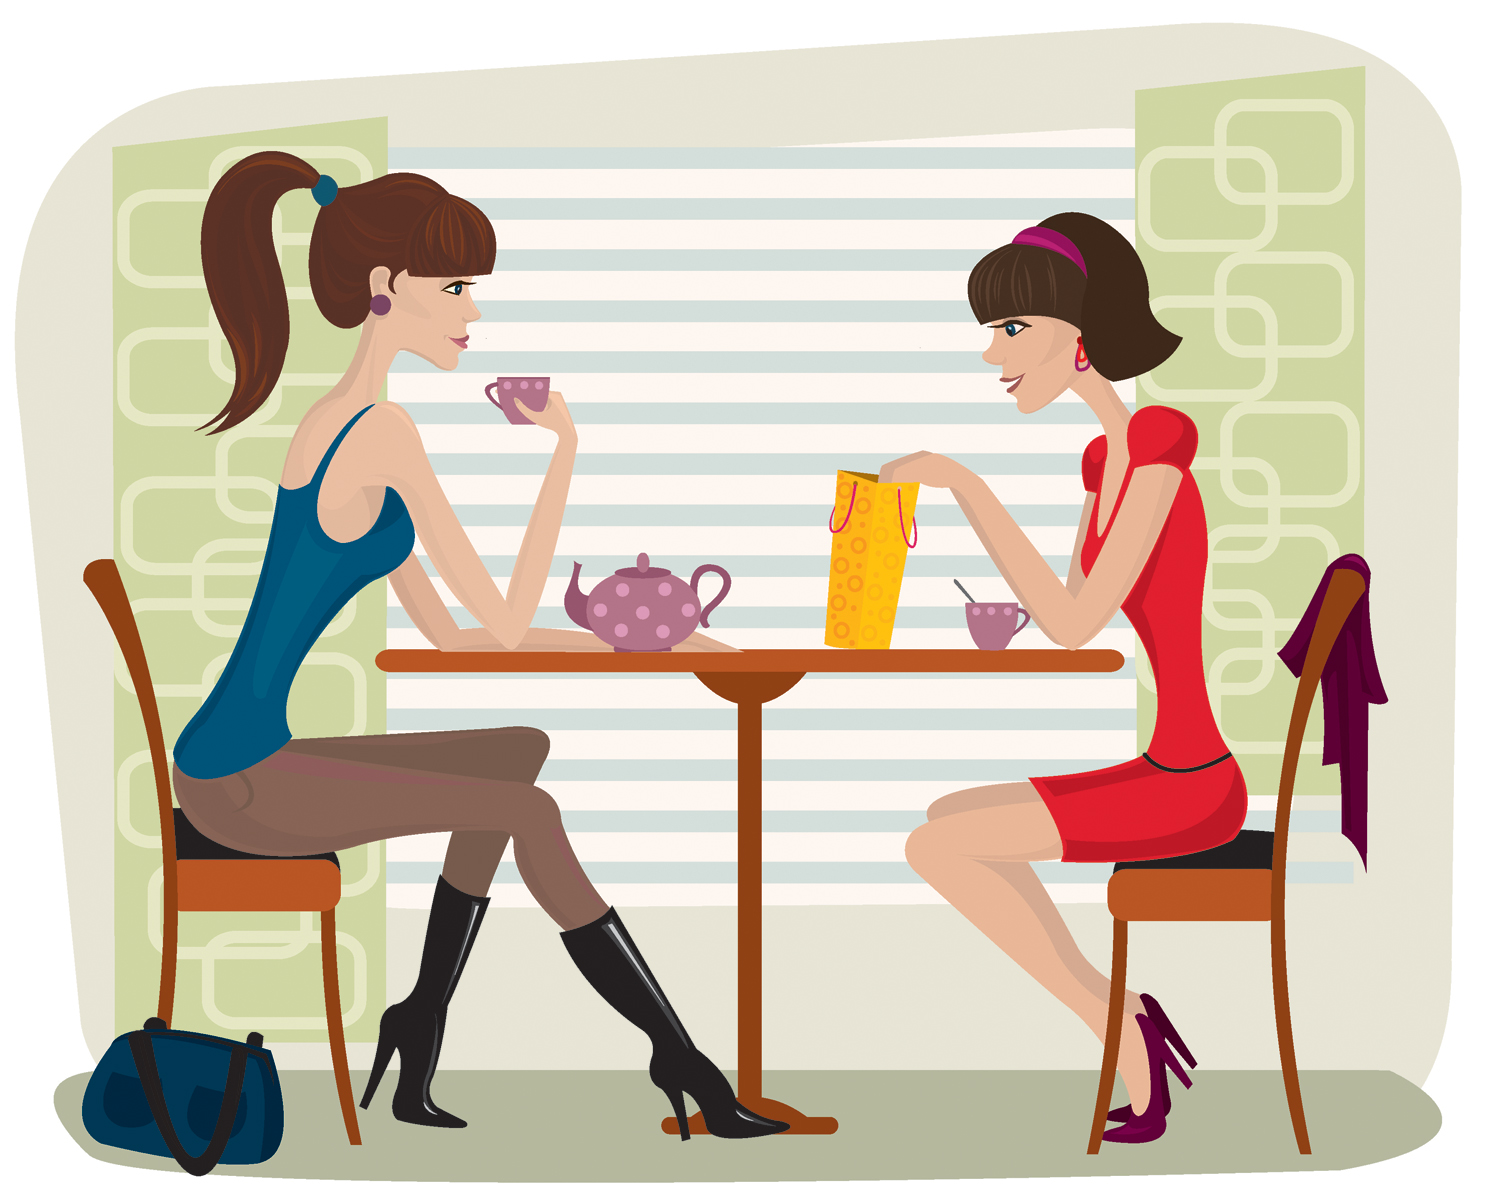 phụ nữ uống trà, khi phụ nữ uống trà, câu chuyện hay về phụ nữ, Becky Connery, Lizzie Leeland - Cunningham